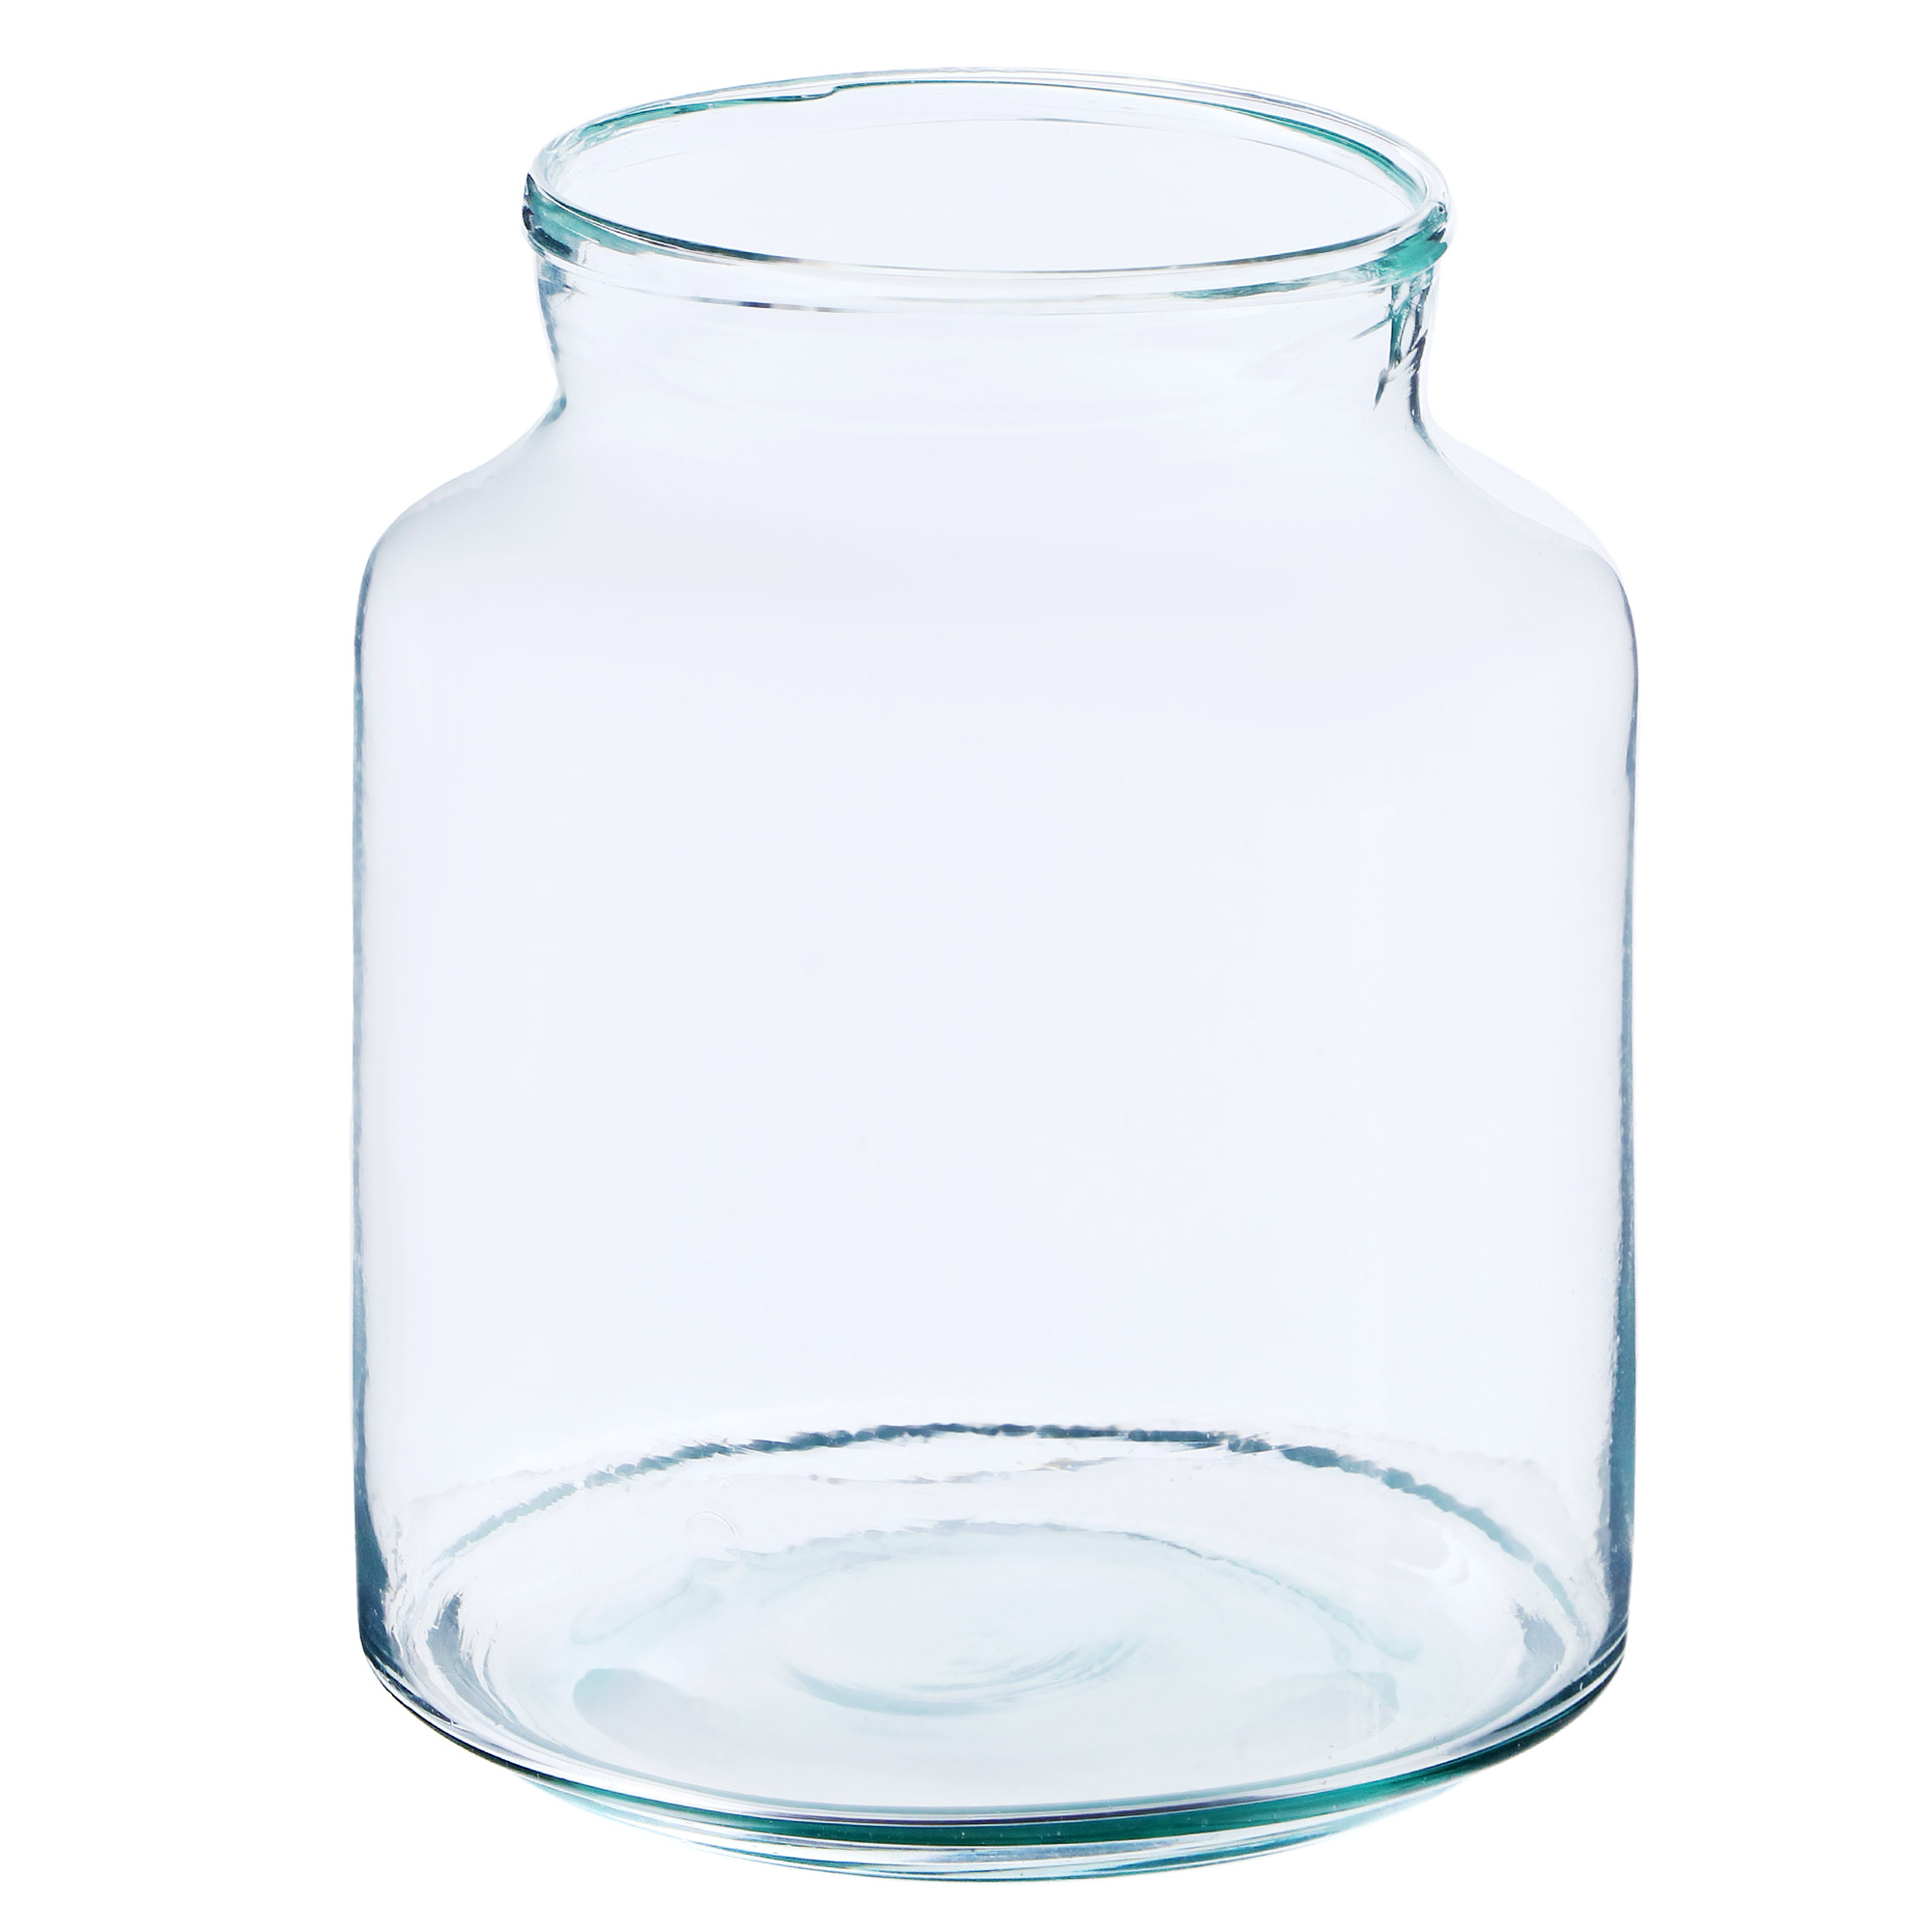 фото Ваза hakbijl glass milkbottle 18х22,5см